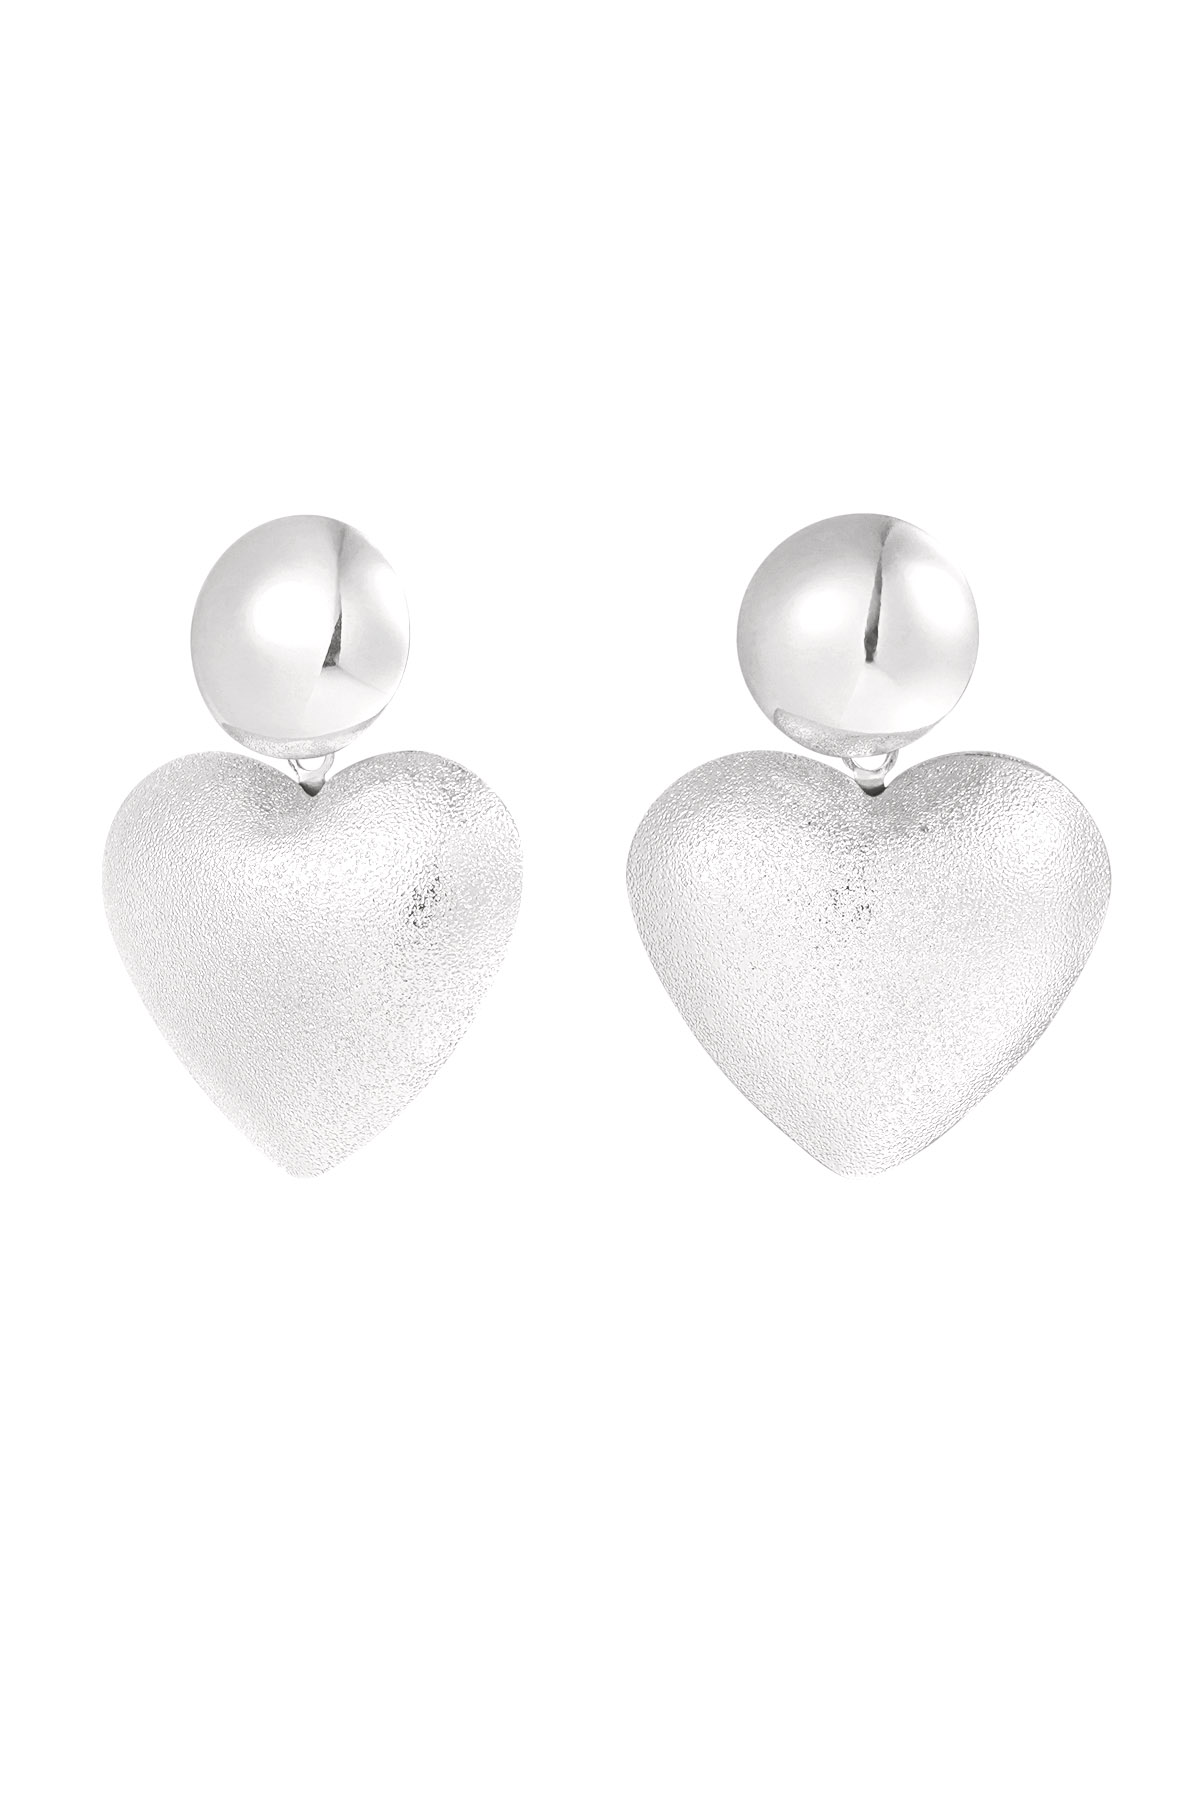 Earrings heart with dot - silver